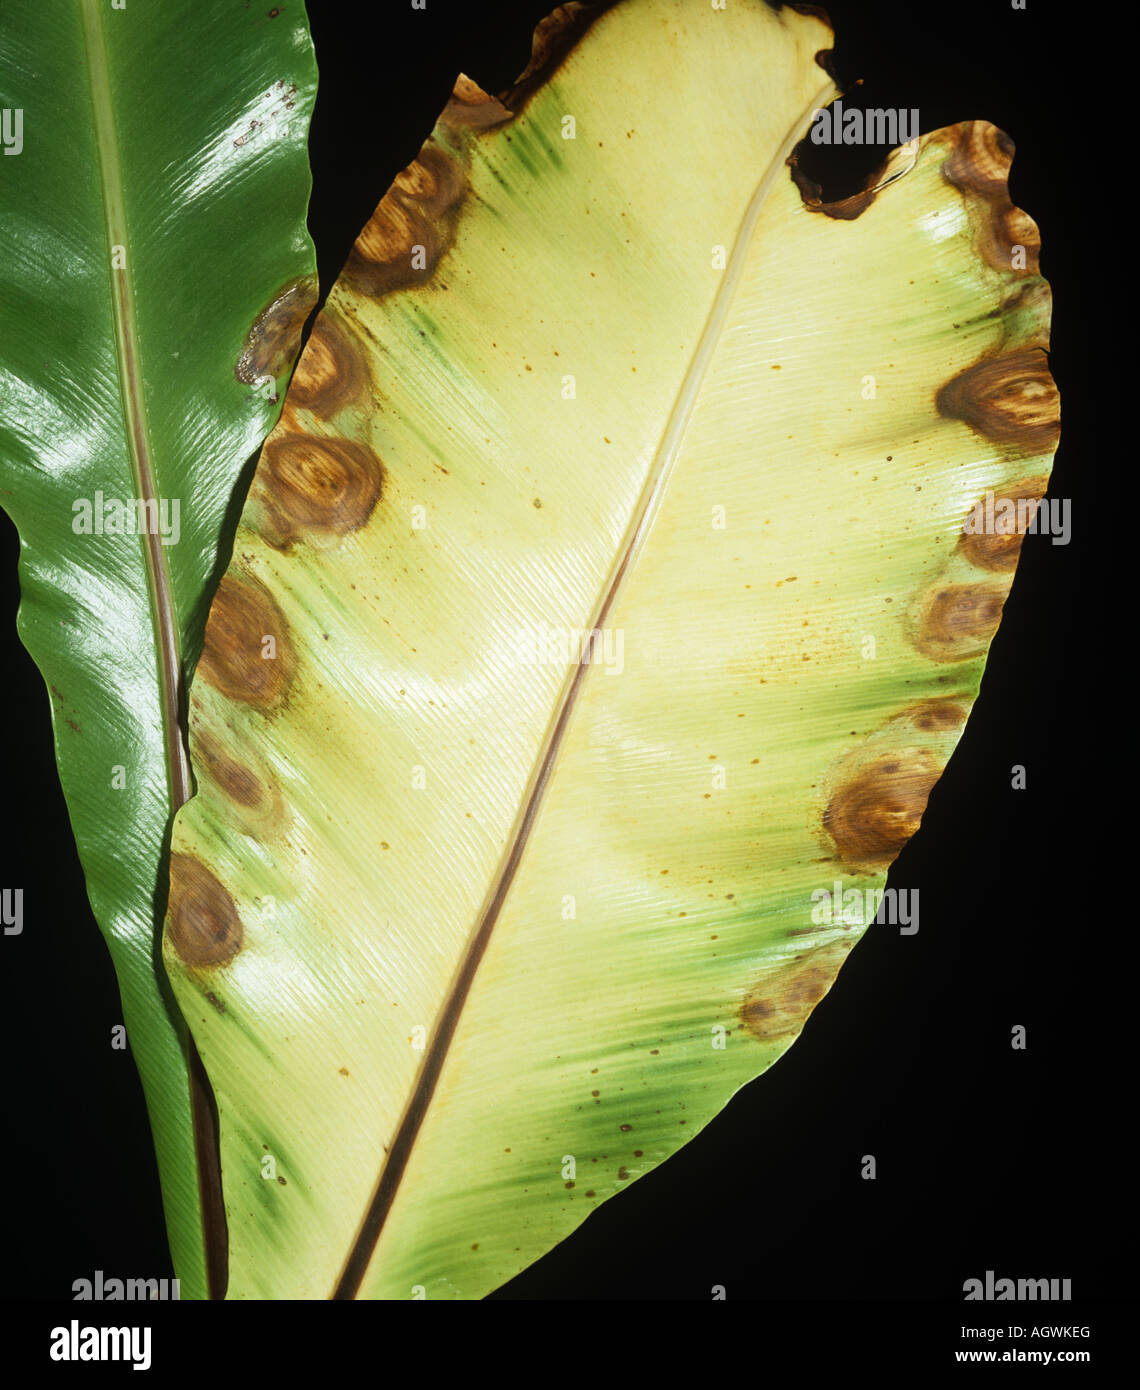 La tache bactérienne Xanthomonas campestris sur la marge de bird s nest fern leaf Banque D'Images